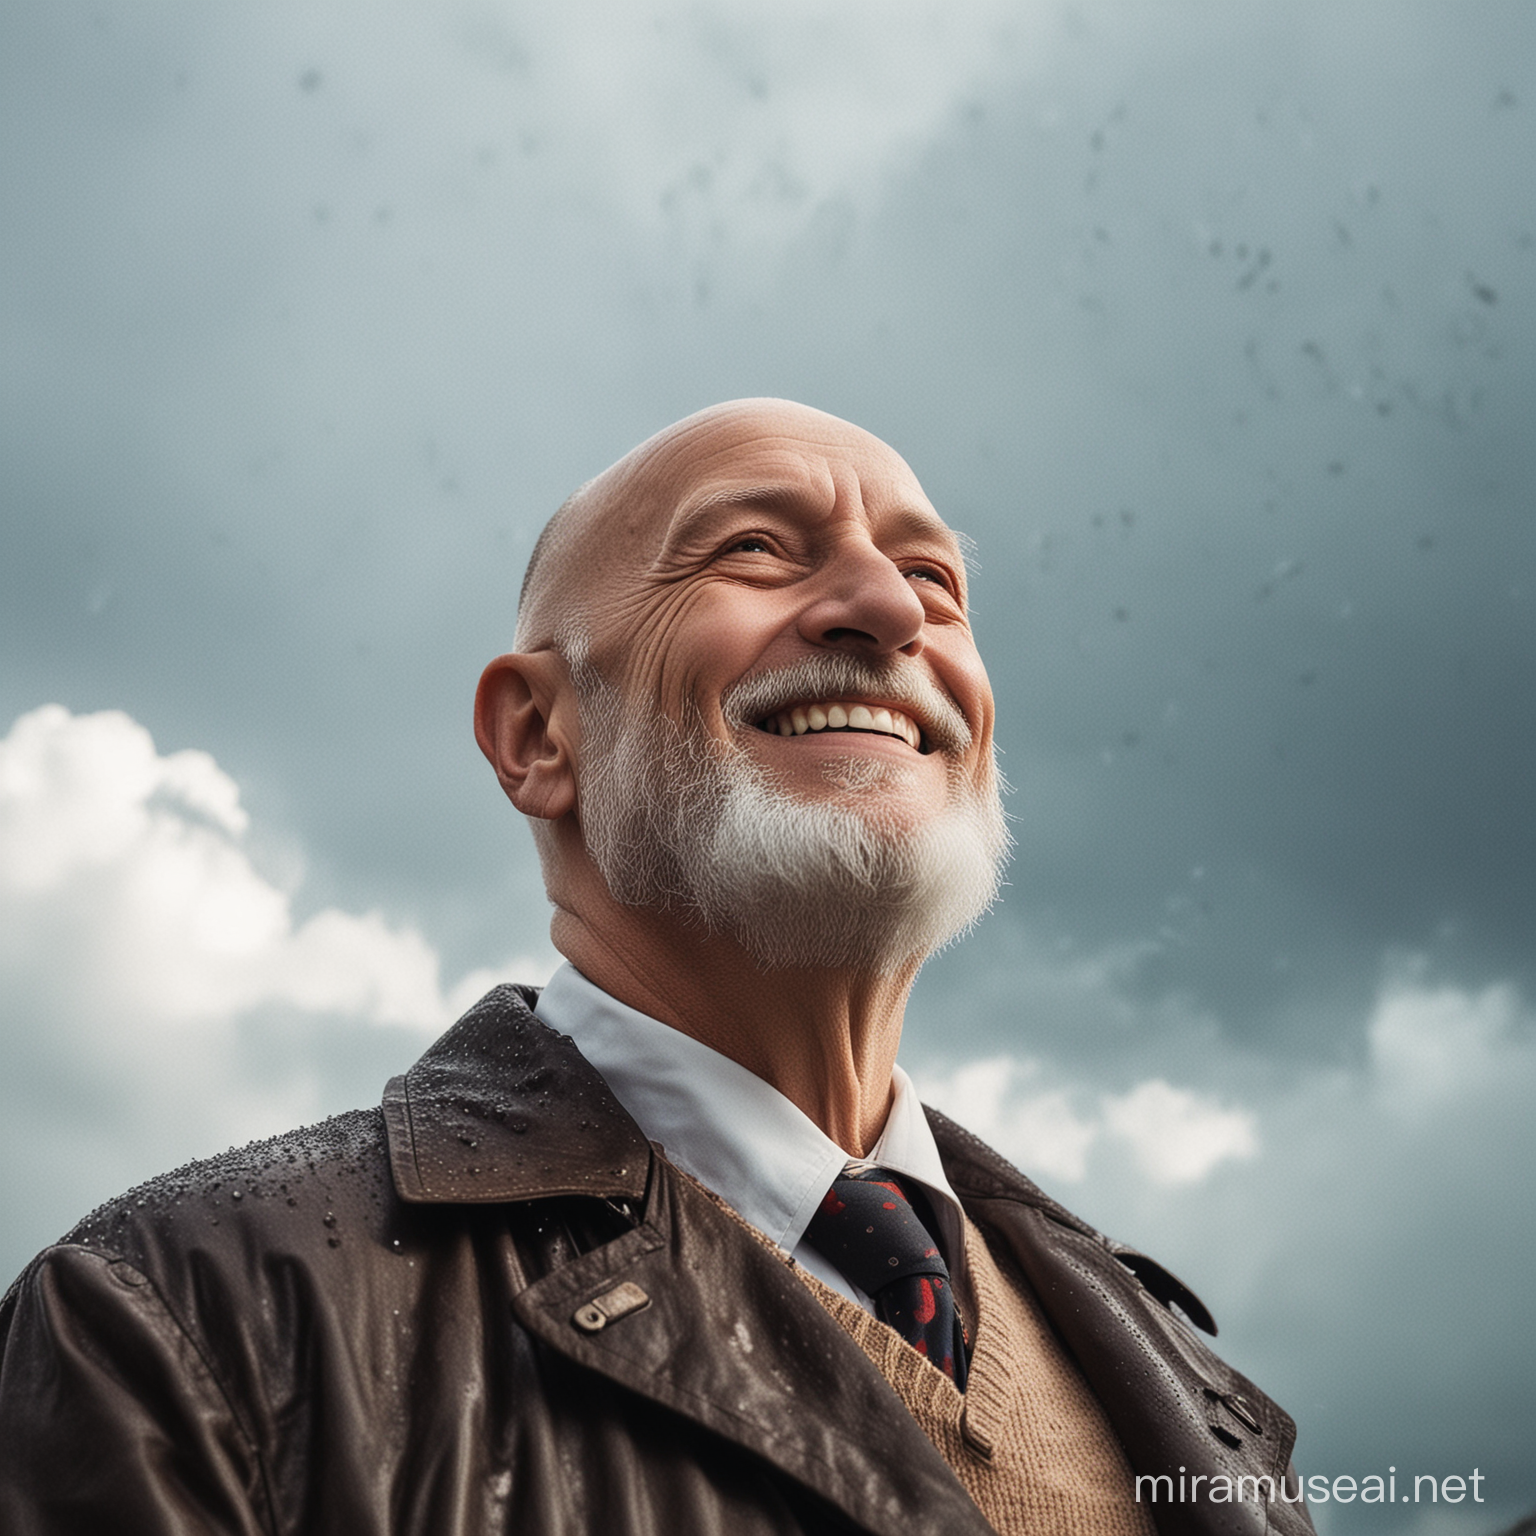 Smiling Bald Elderly Man Enjoying Rain Outdoors